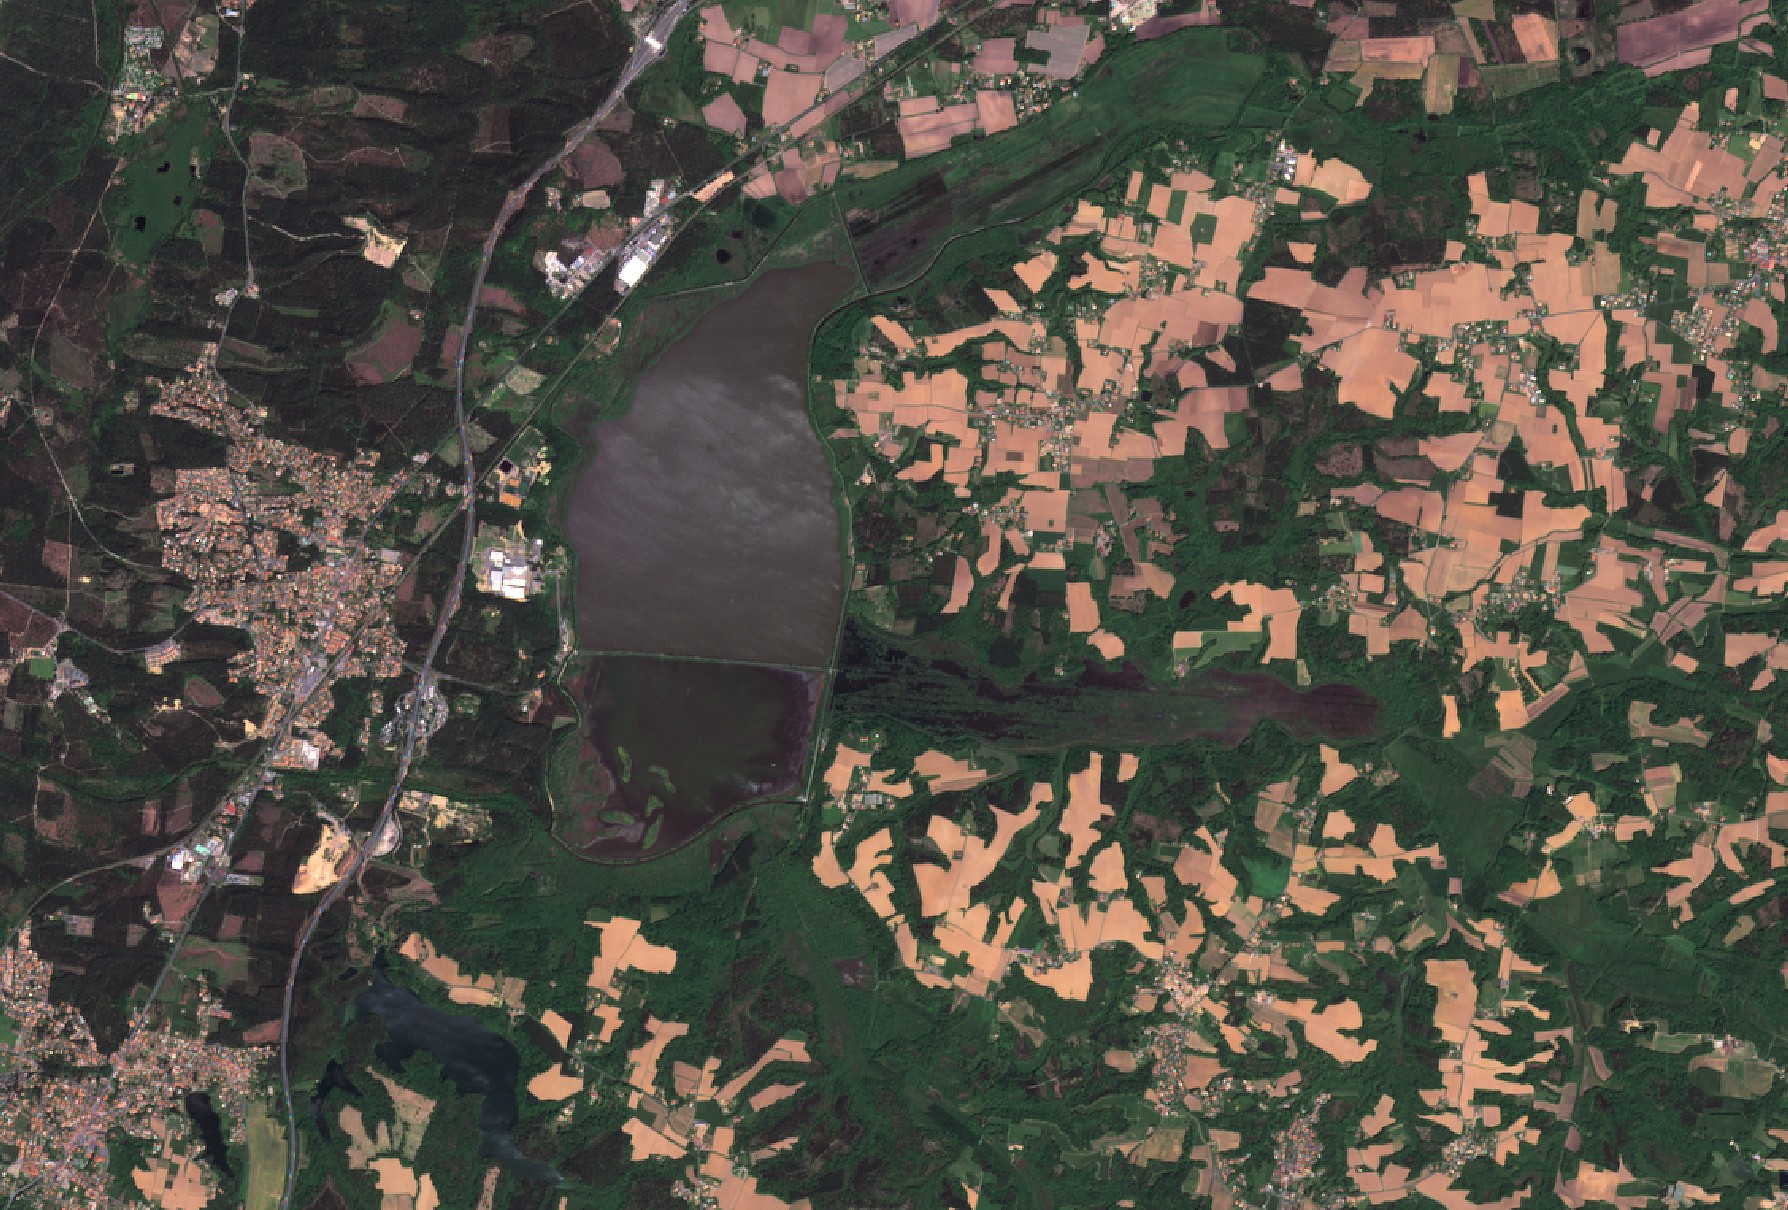 Satellite d'observation - Environnement - Quiz - Image - Remote Sending - Earth observation - Un autre regard sur la Terre - Jeu - Quizz